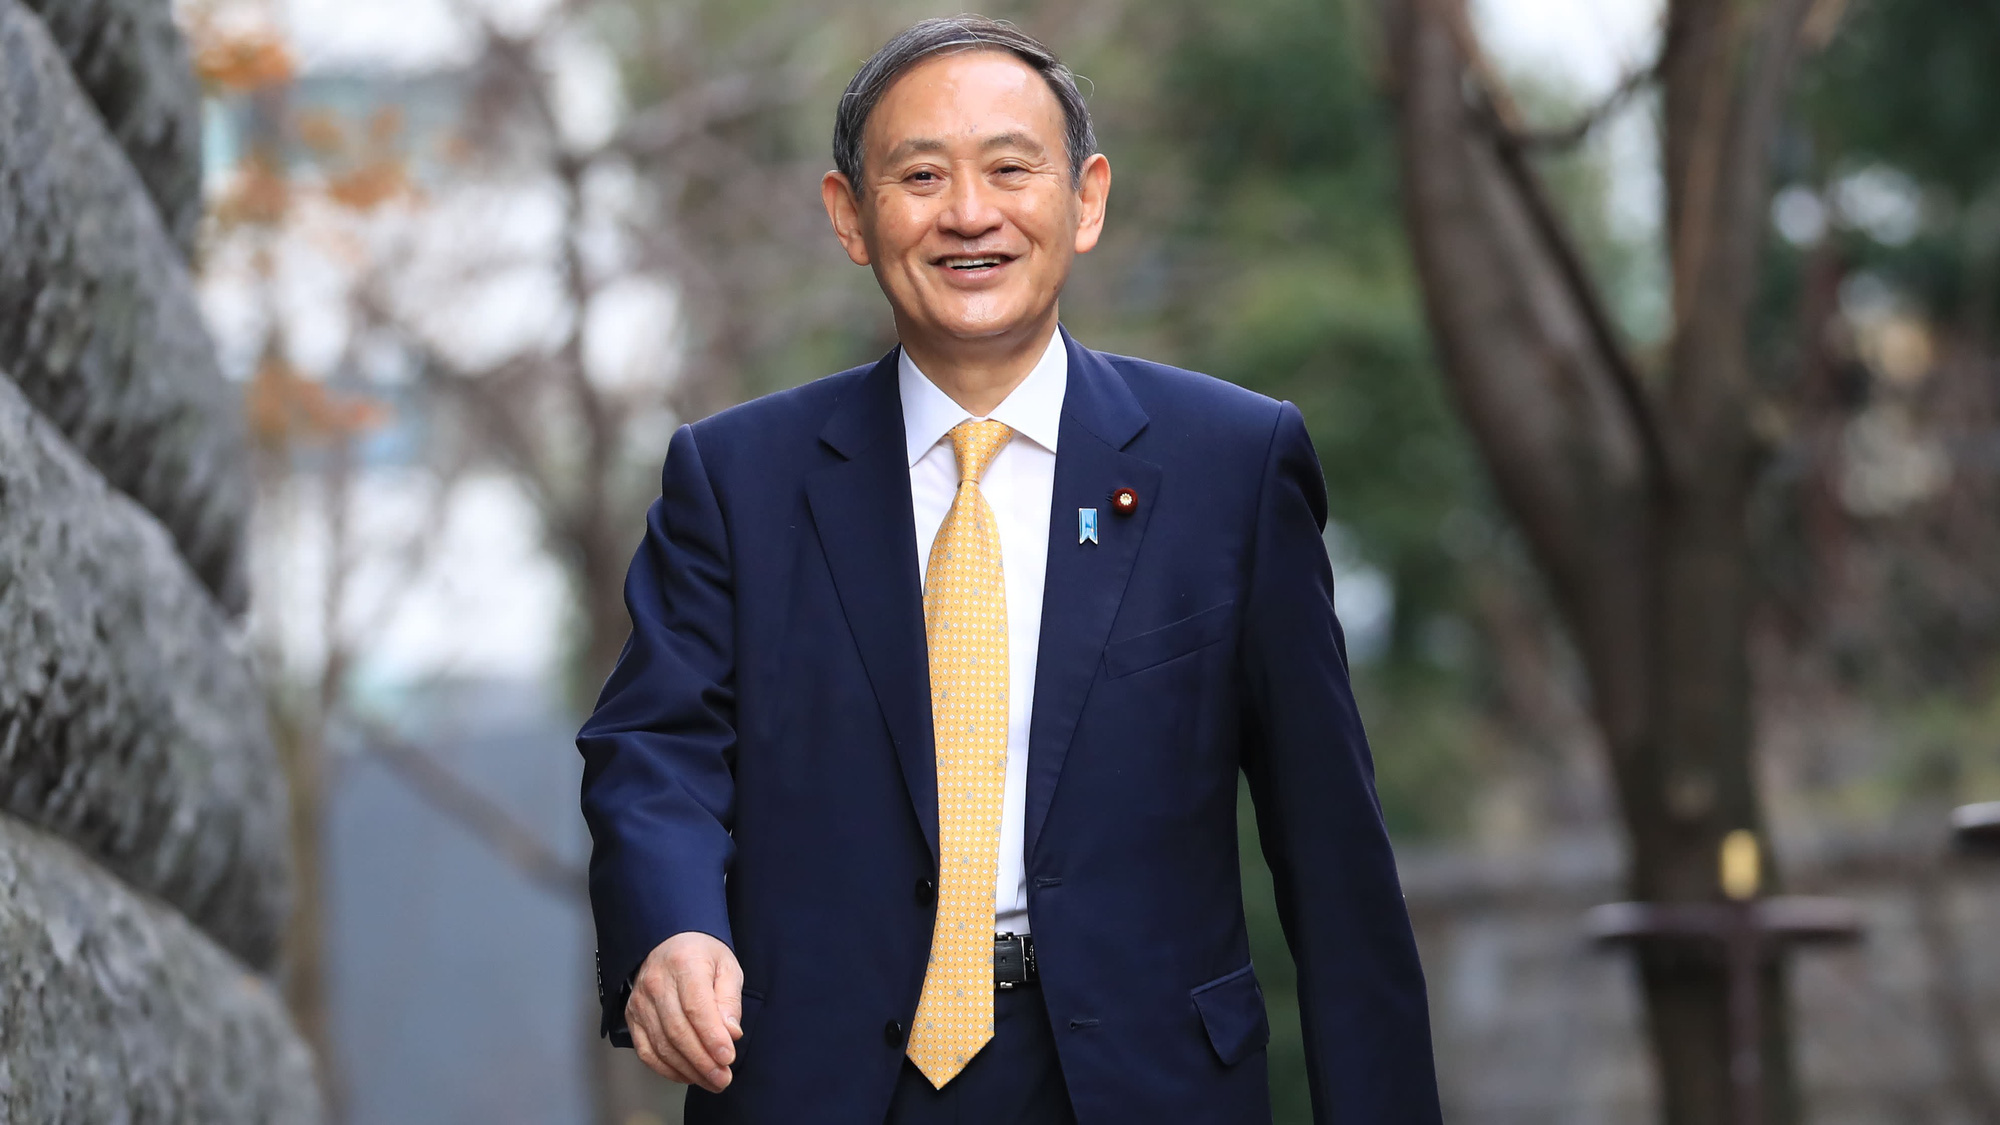 Cuộc sống lành mạnh của chính trị gia 71 tuổi sắp trở thành tân Thủ tướng Nhật Bản: Sáng đi bộ, đêm gập bụng, quyết tâm giảm 14 kg để tránh bệnh tật - Ảnh 1.